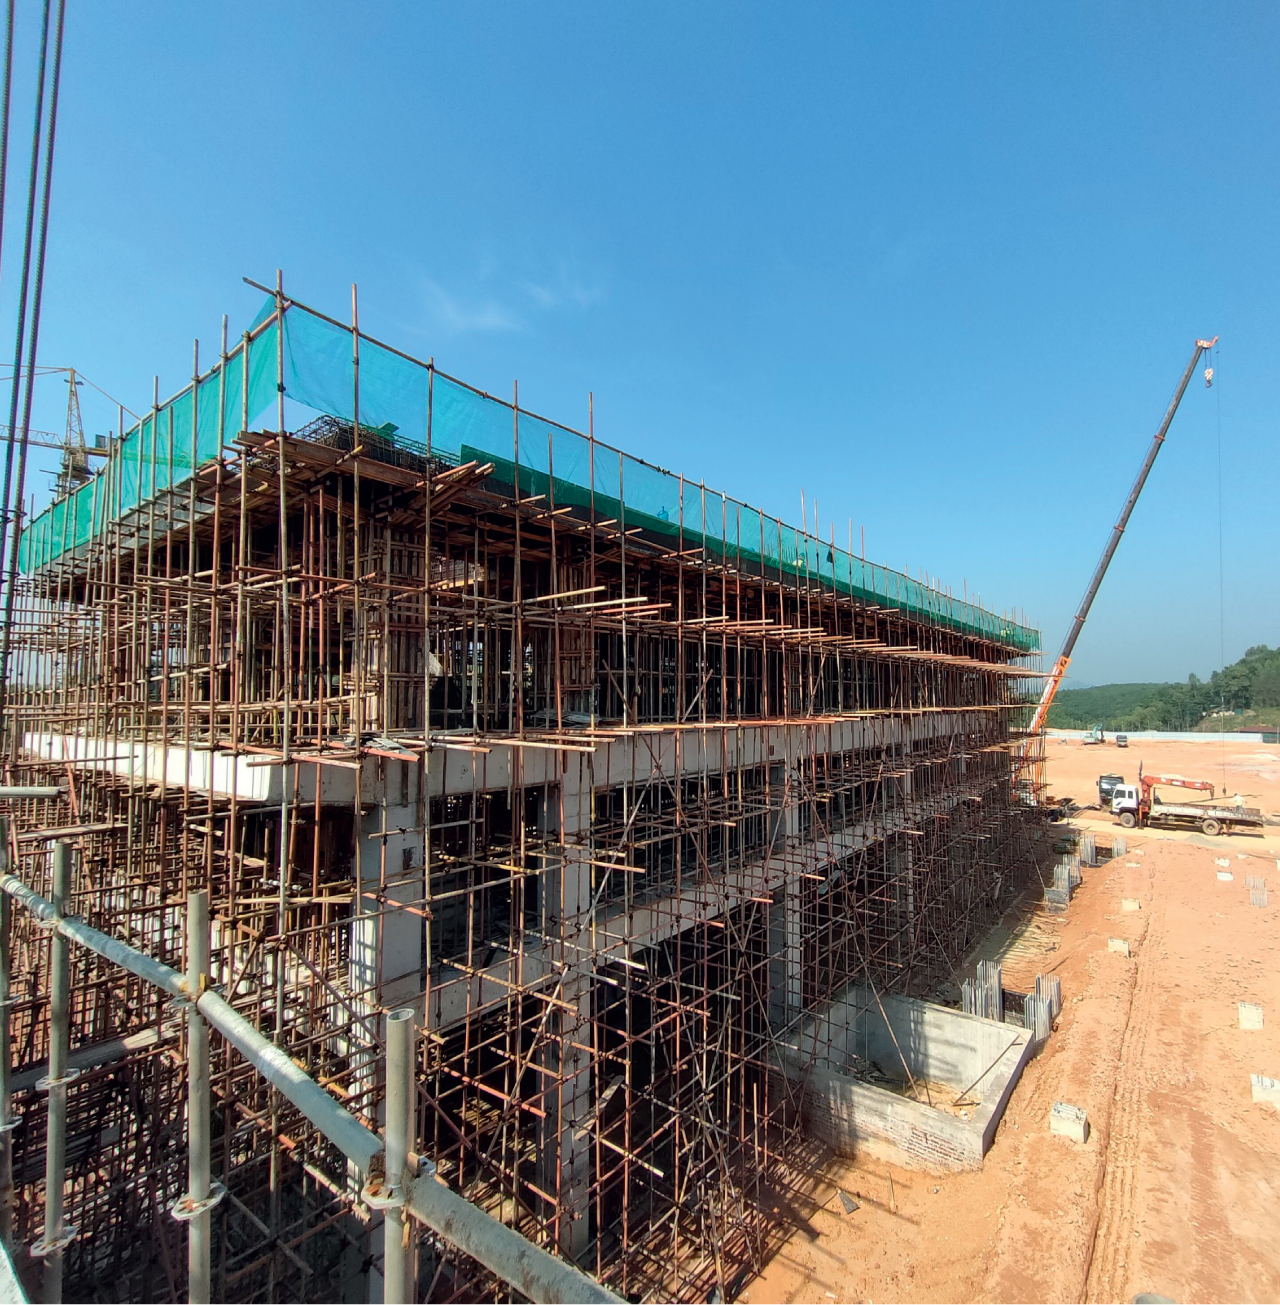 Công trình xây dựng và trang trí trạm điện rác Phú Thọ, Dự án nhà máy xử lý rác thải sinh hoạt phát điện tại Phú Thọ, Việt Nam